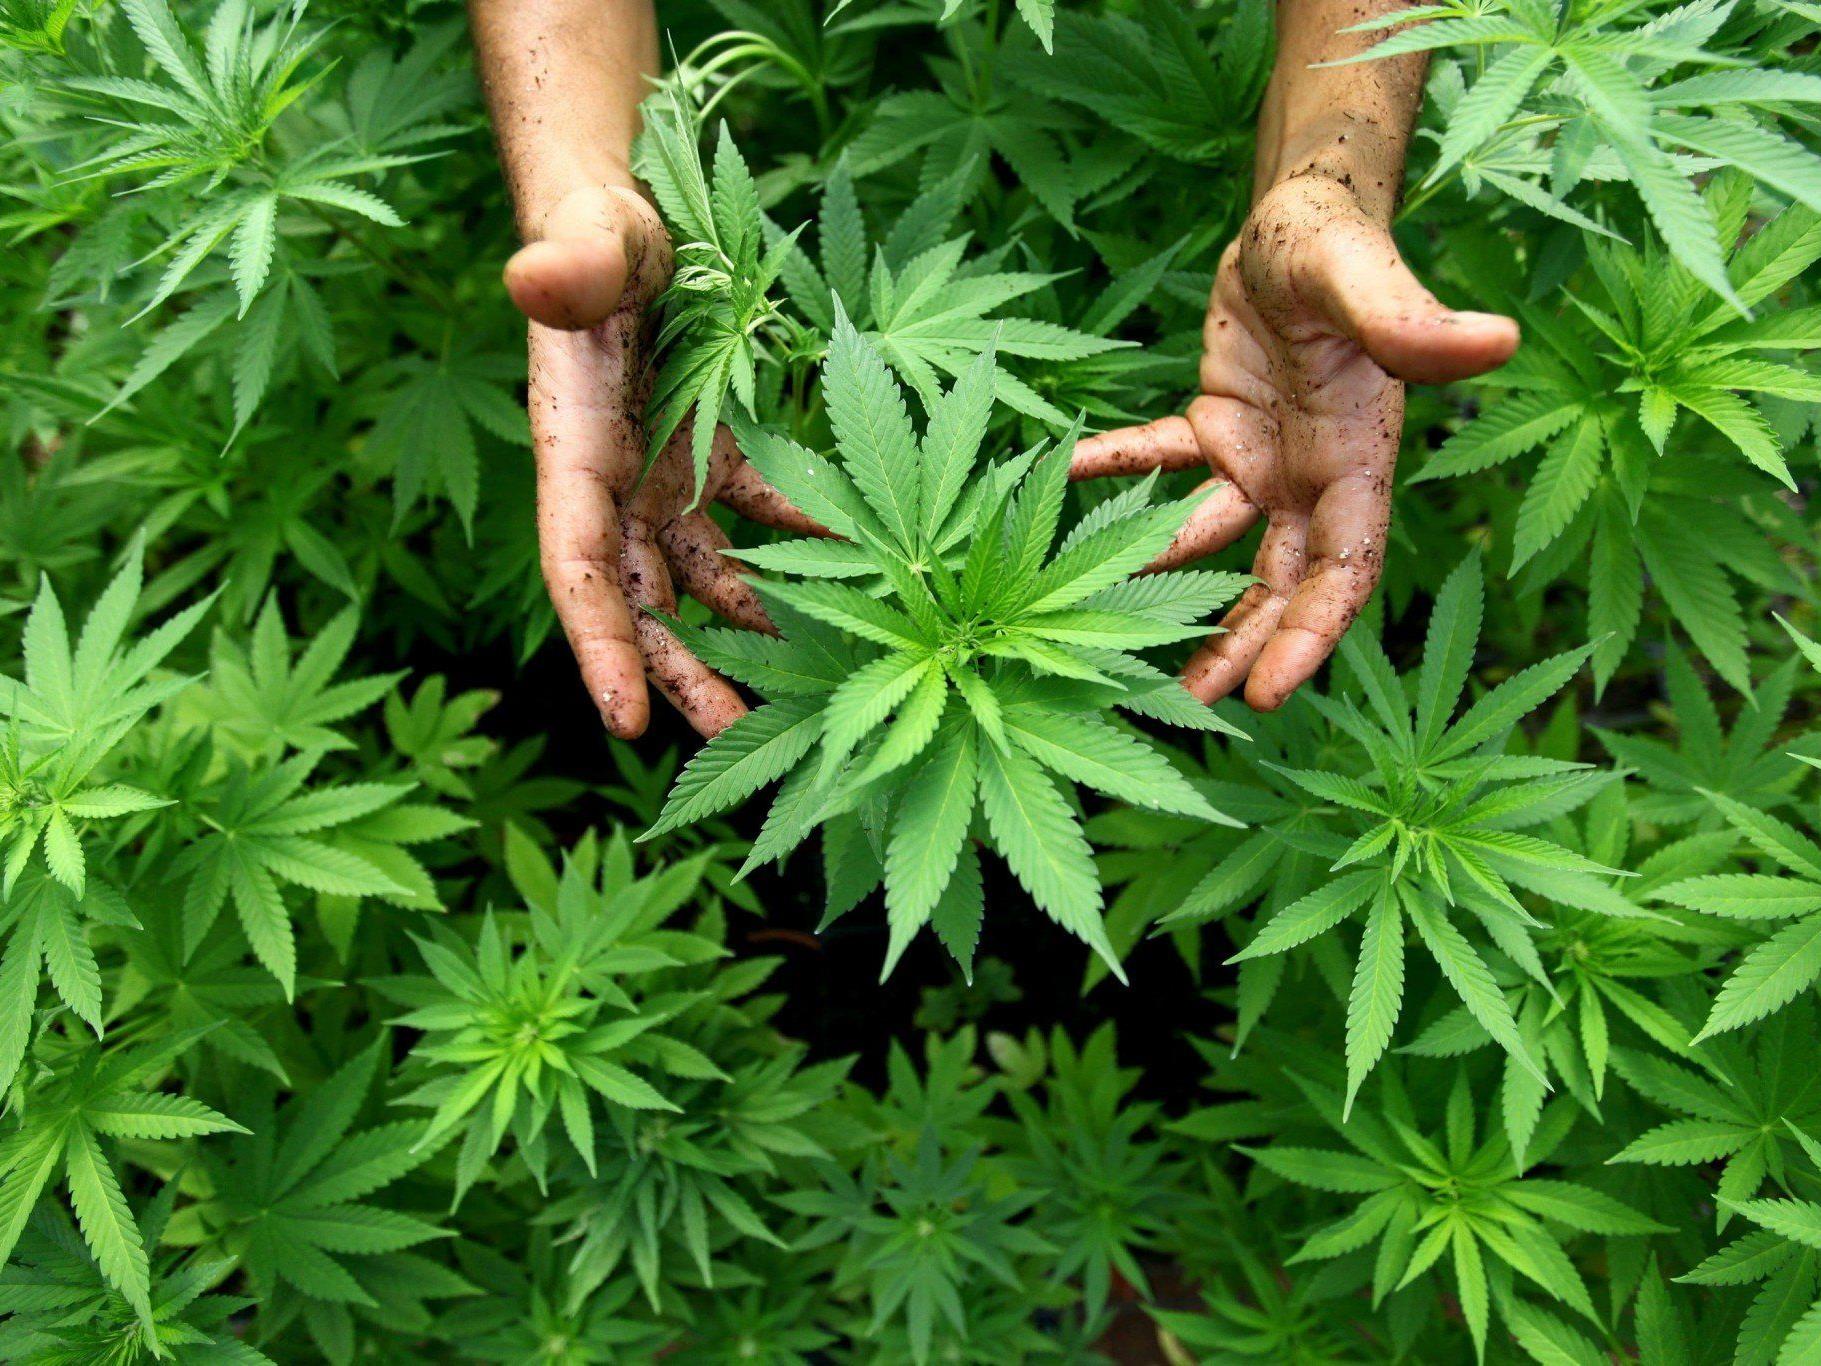 Bei einer Hausdurchsuchung wurden fast 400 Marihuana-Pflanzen im Haus von Heidi Fleiss gefunden.